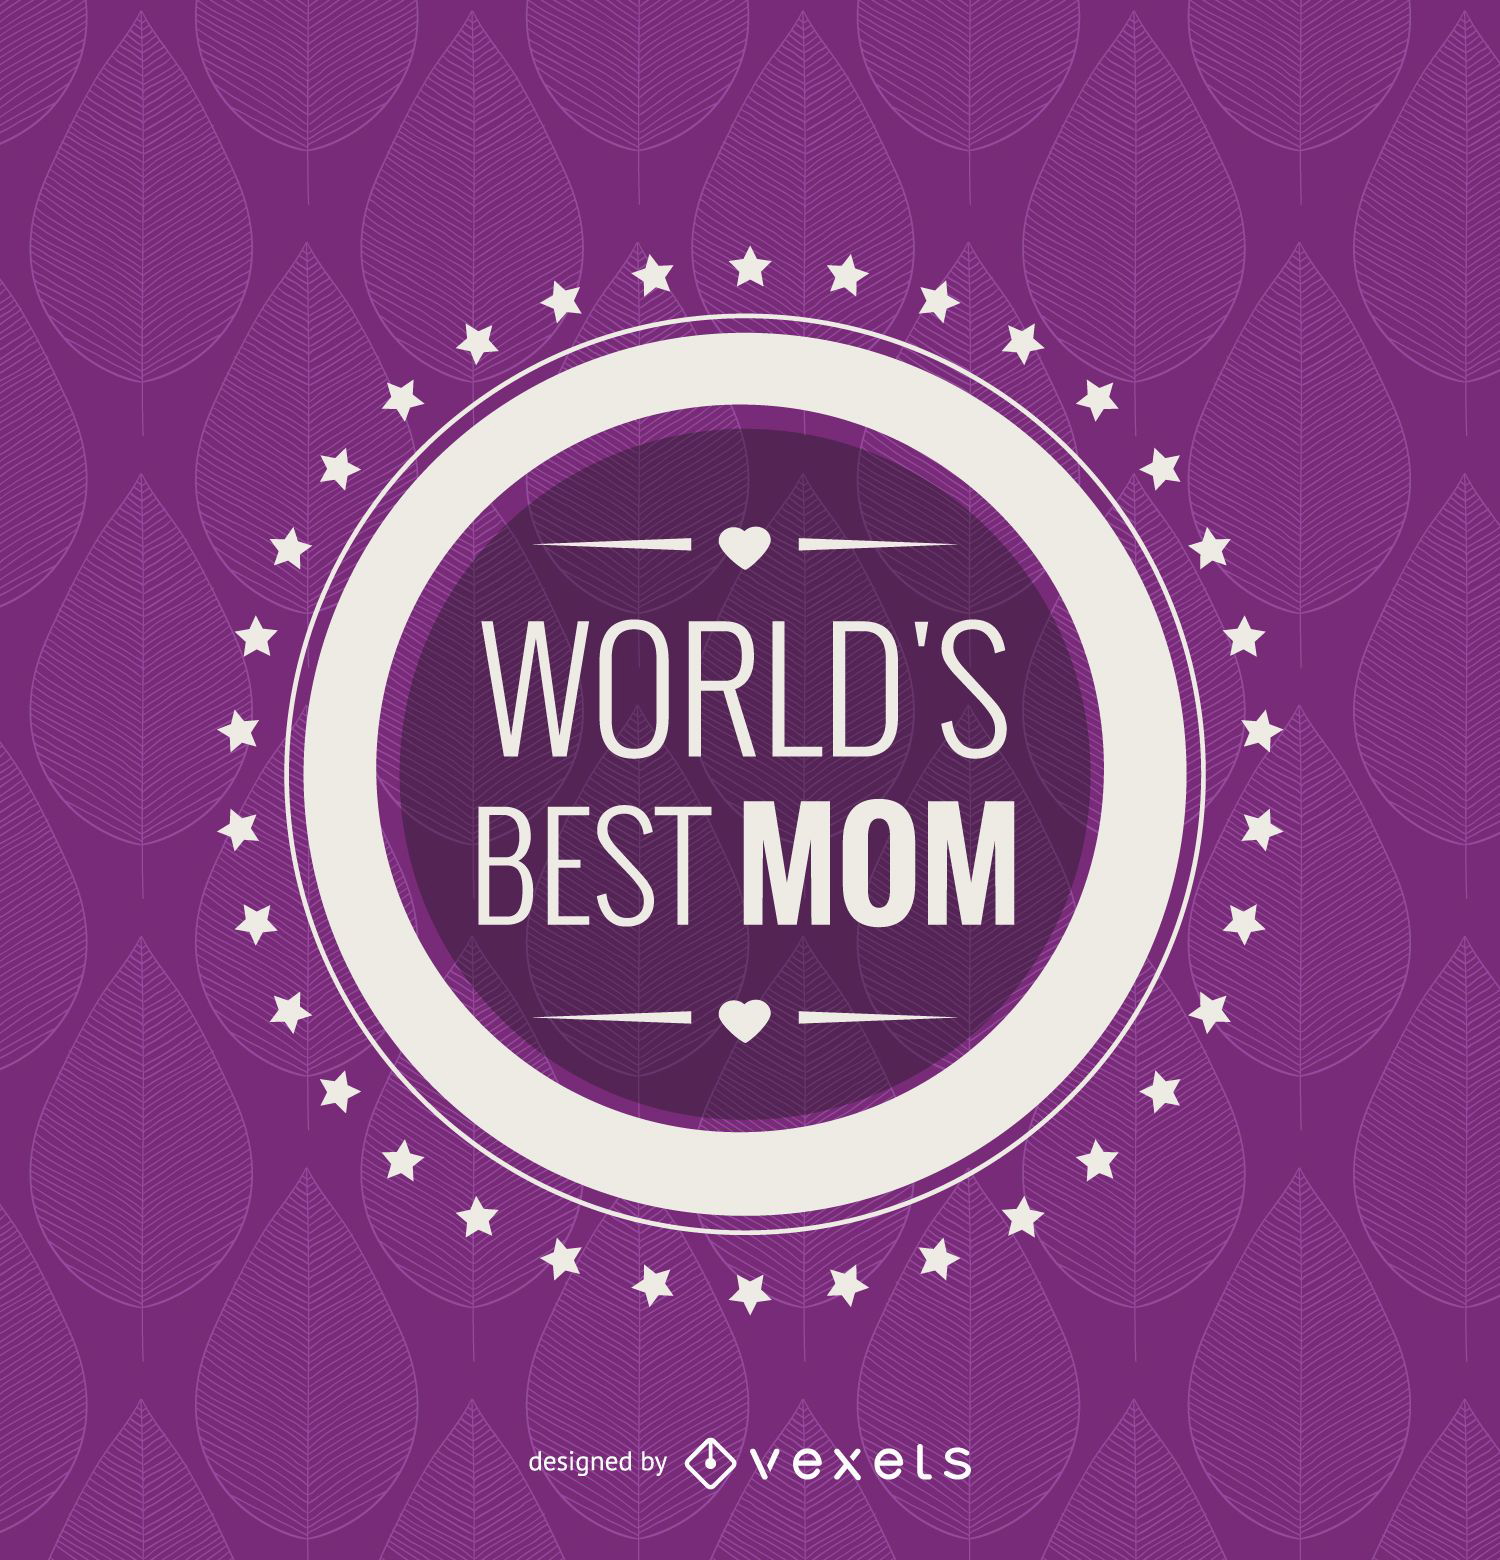 Kreisen Sie das beste Mutter-Emblem der Welt ein